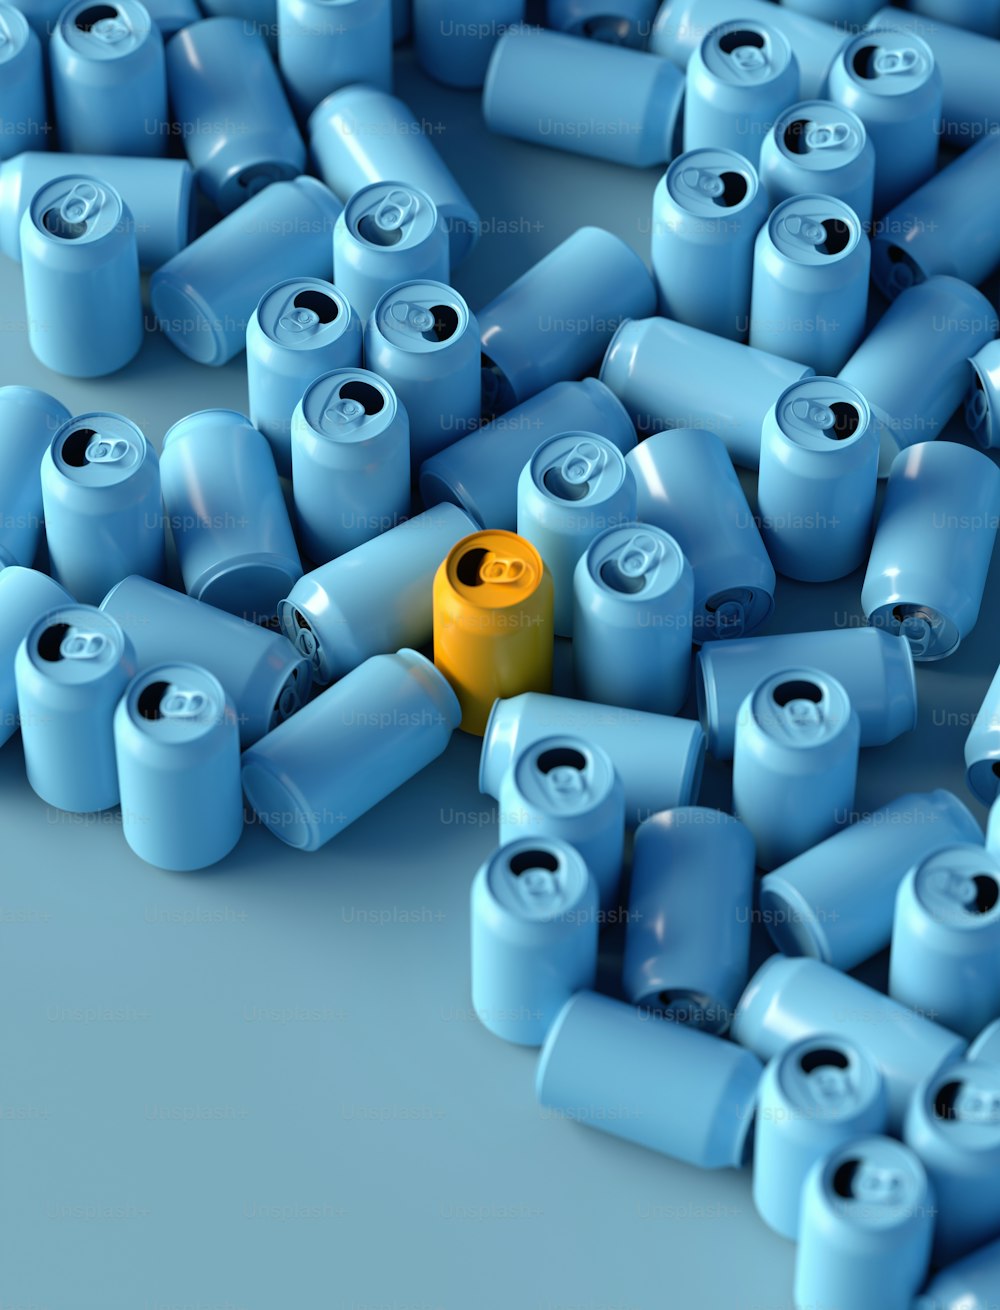 Un oggetto giallo è circondato da molti oggetti blu